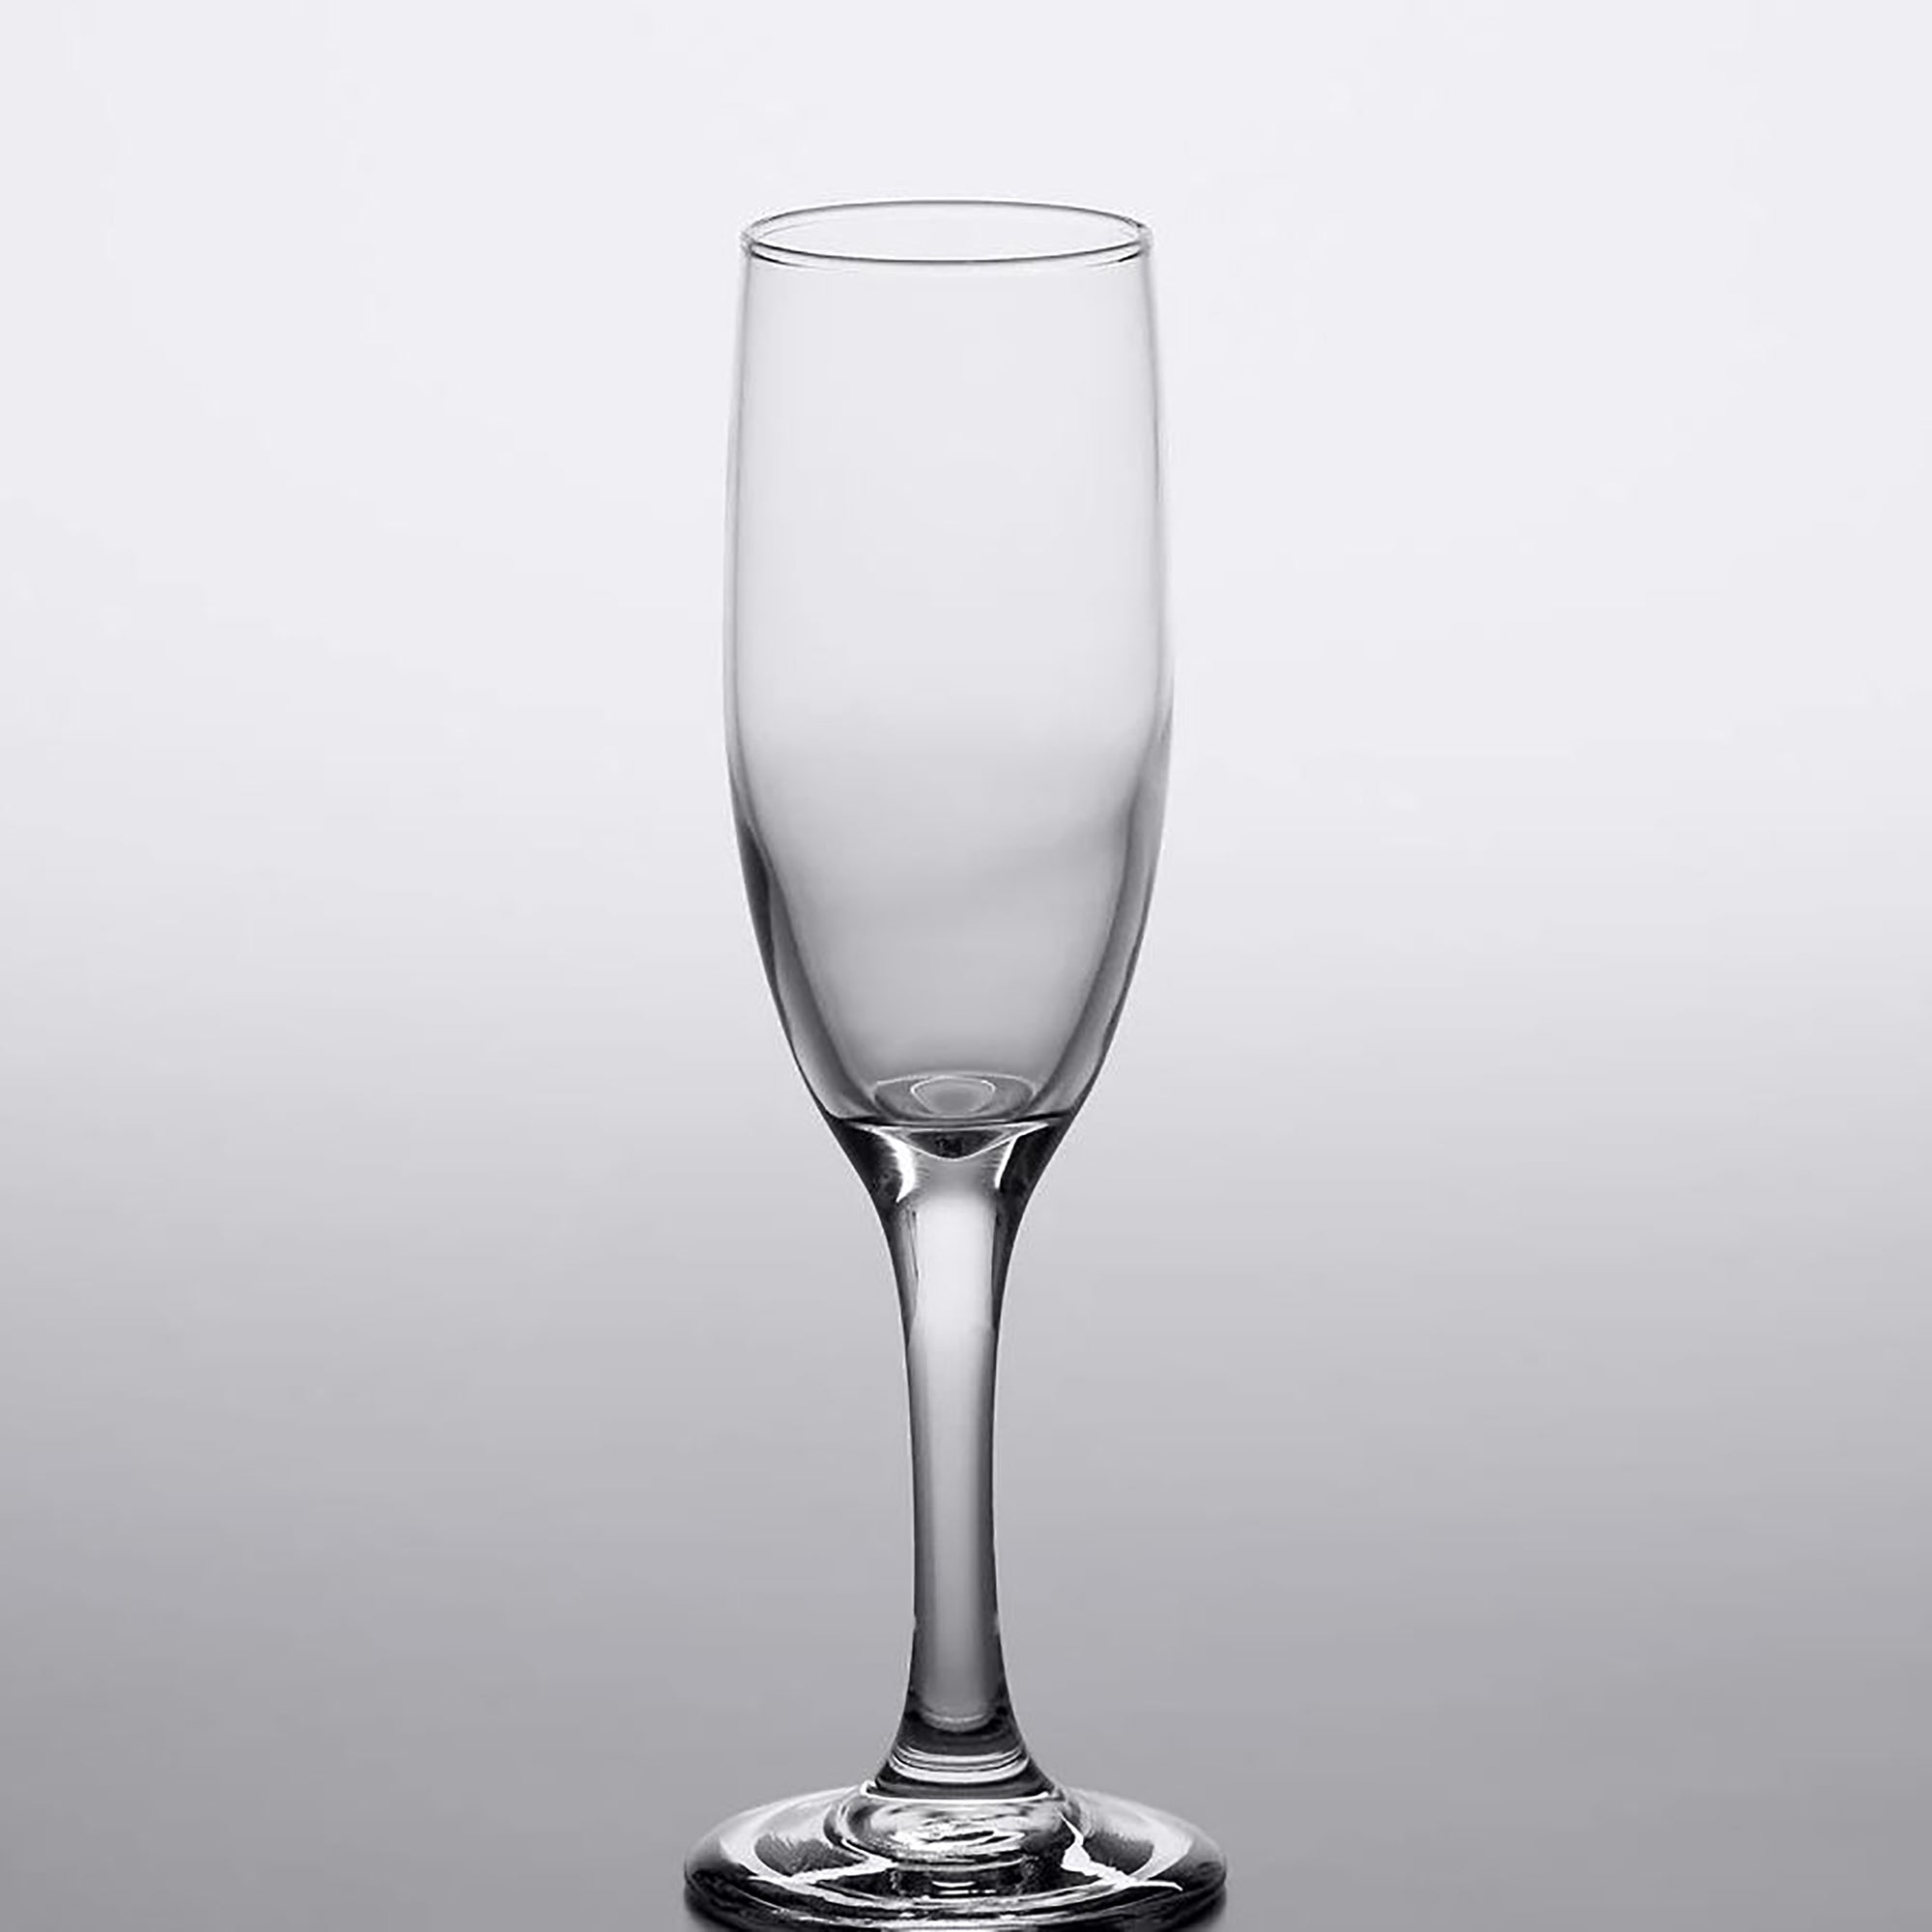 Champaign glass